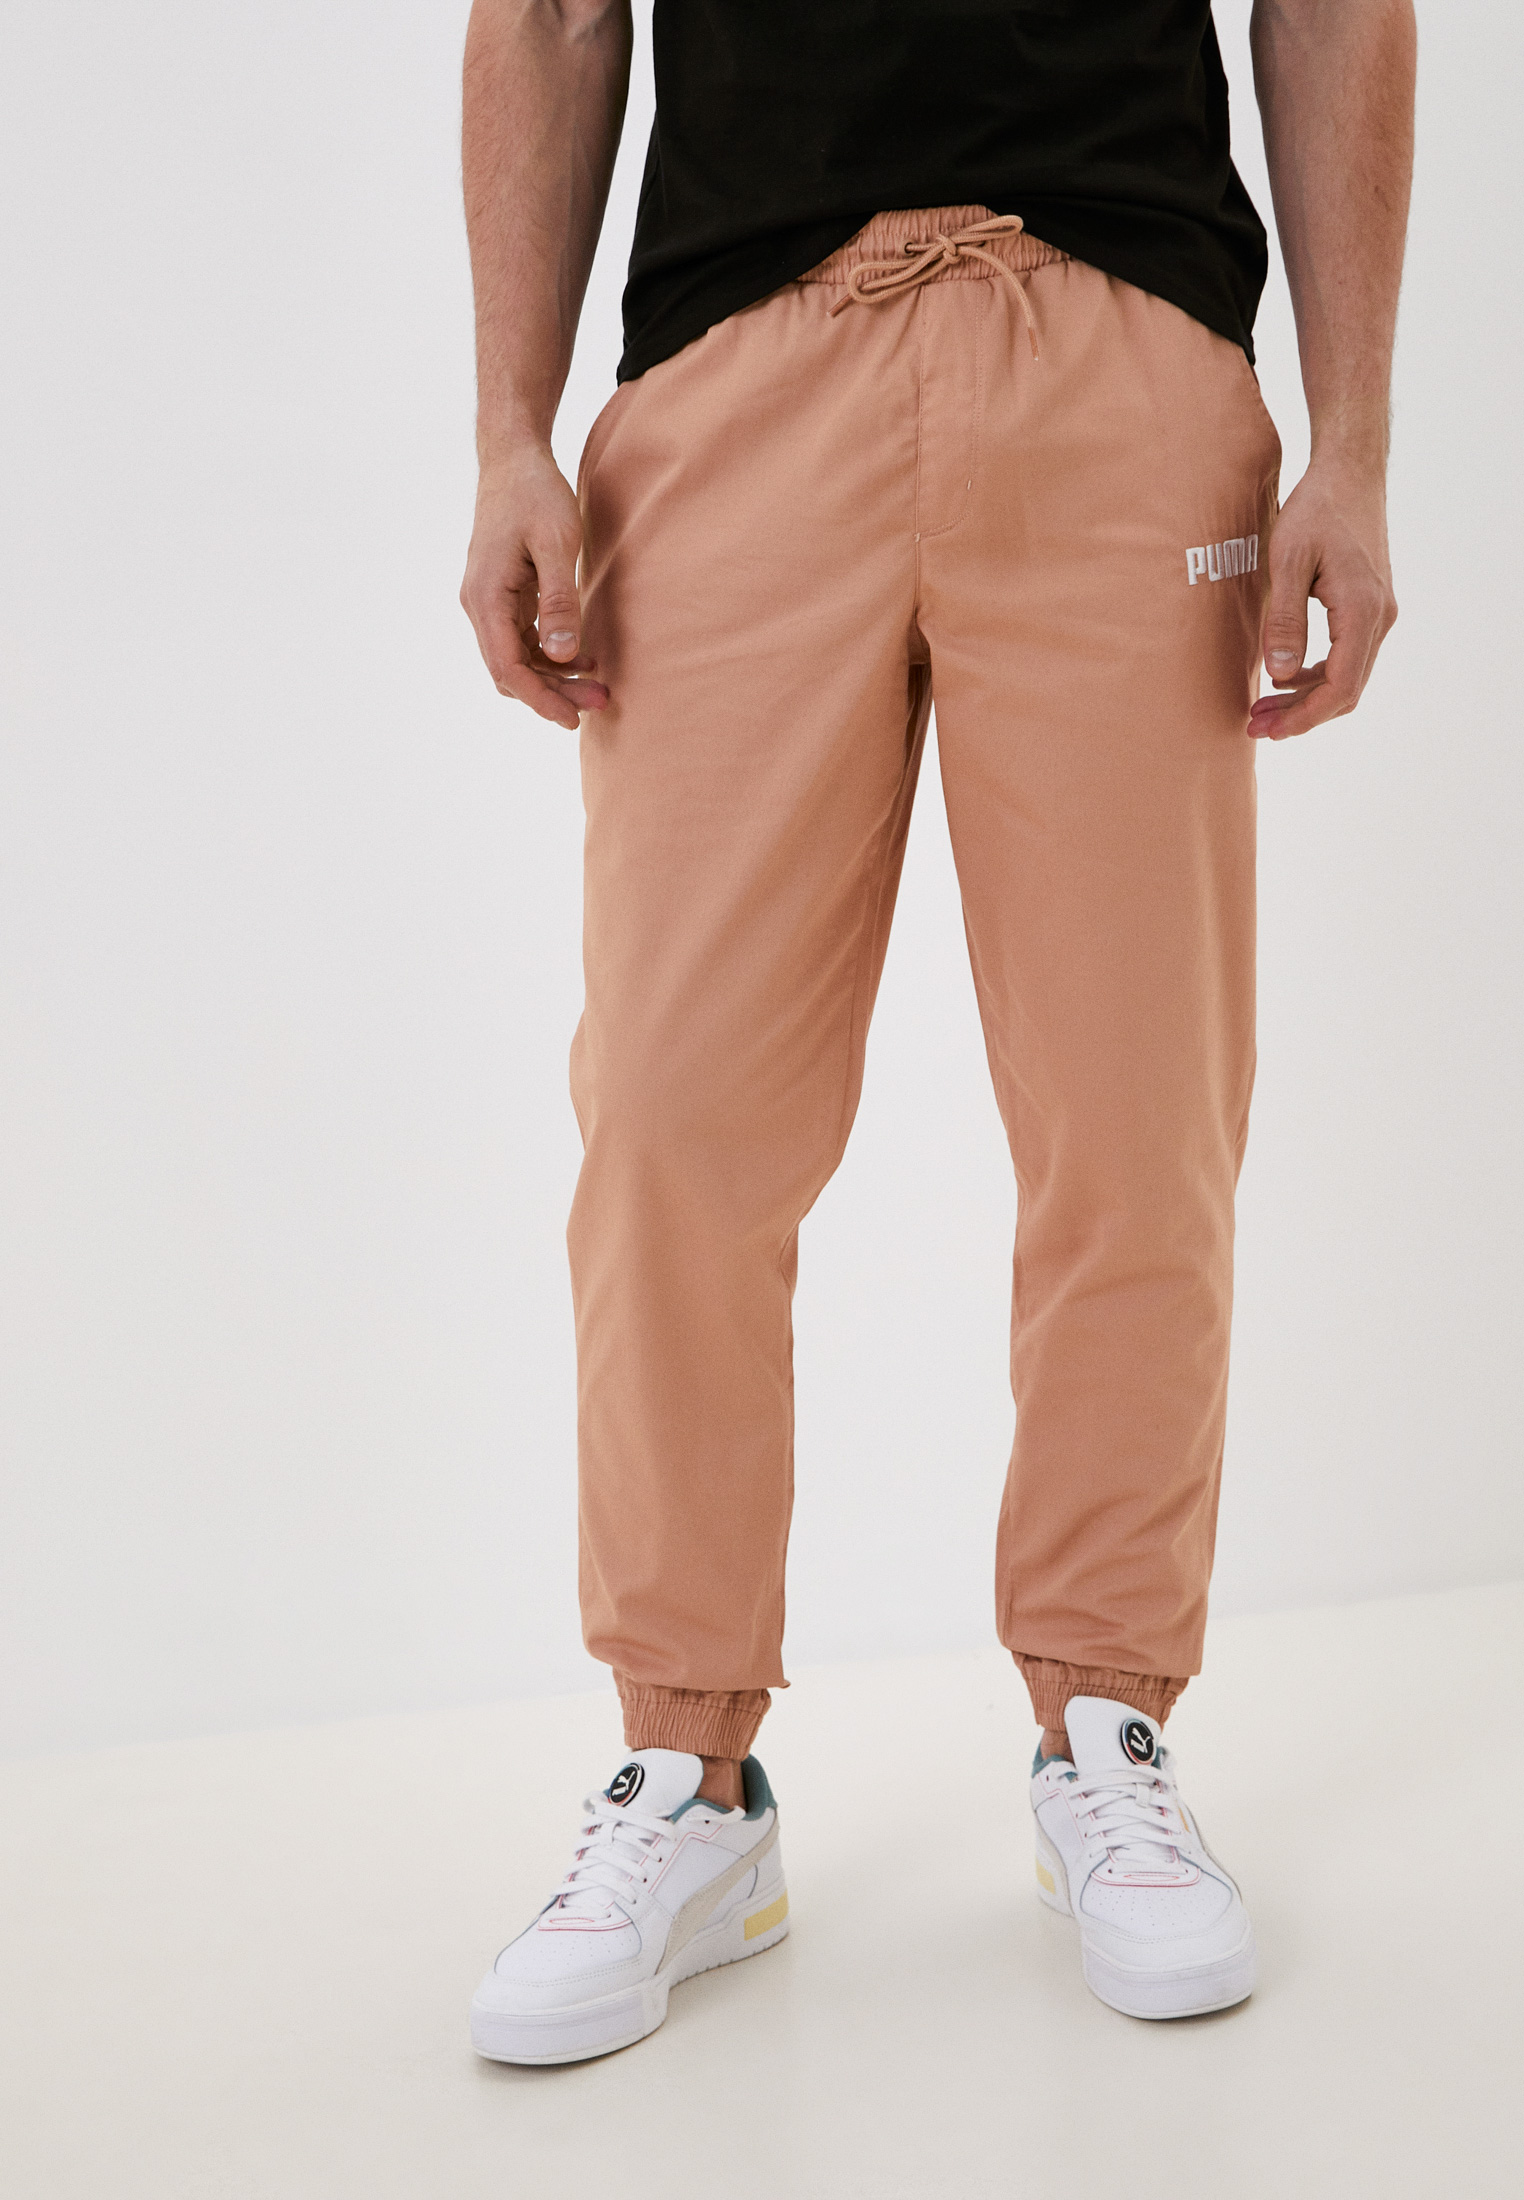 Брюки спортивные PUMA Chino Pants, цвет: бежевый, RTLABM558301 — купить в  интернет-магазине Lamoda